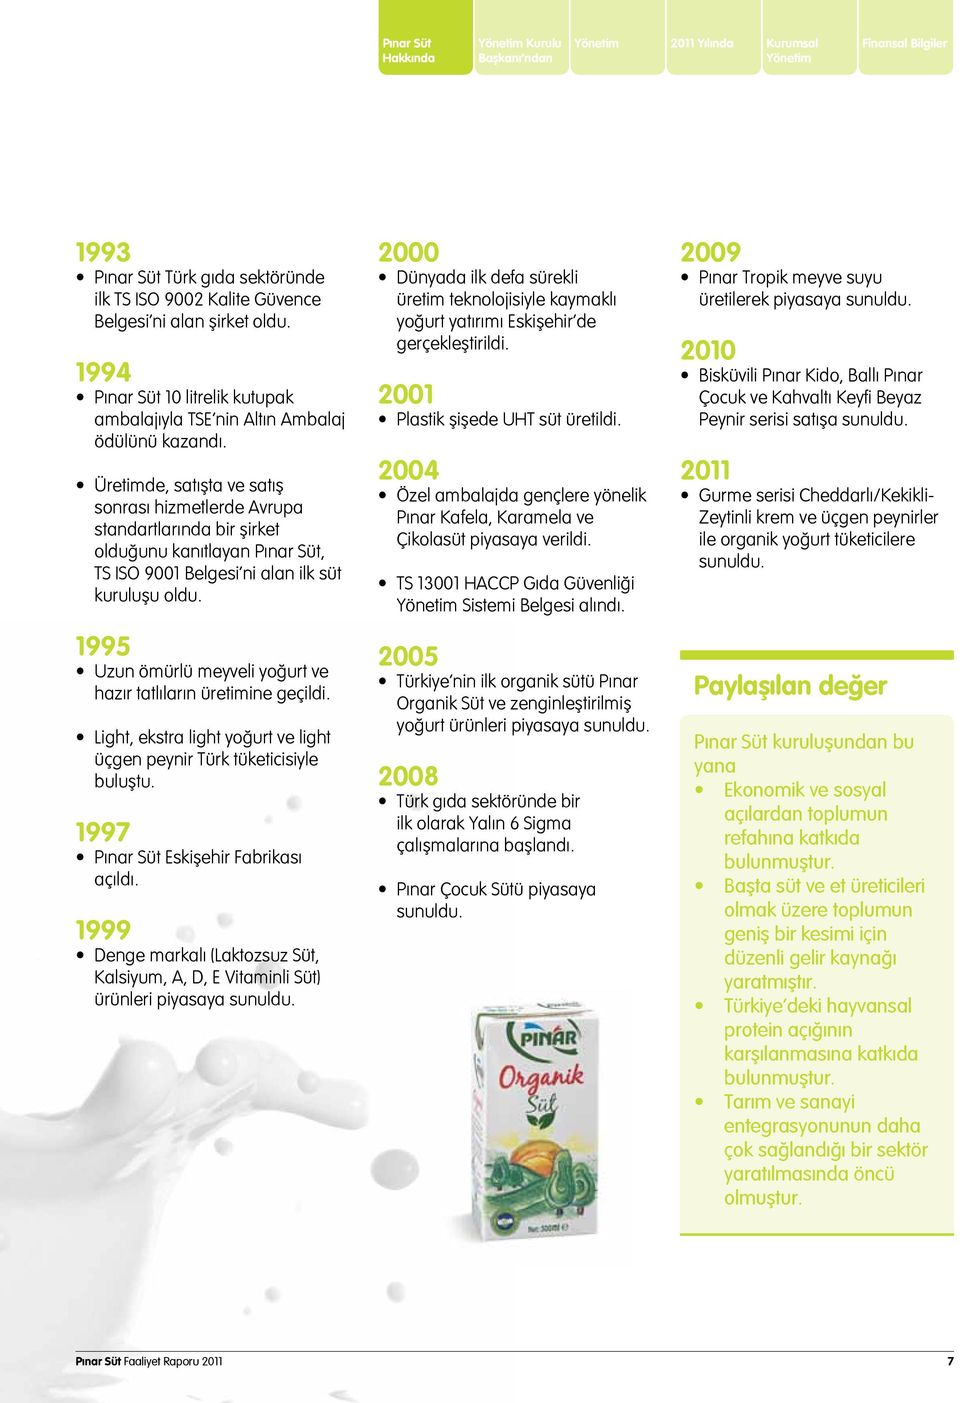 Üretimde, satışta ve satış sonrası hizmetlerde Avrupa standartlarında bir şirket olduğunu kanıtlayan Pınar Süt, TS ISO 9001 Belgesi ni alan ilk süt kuruluşu oldu.